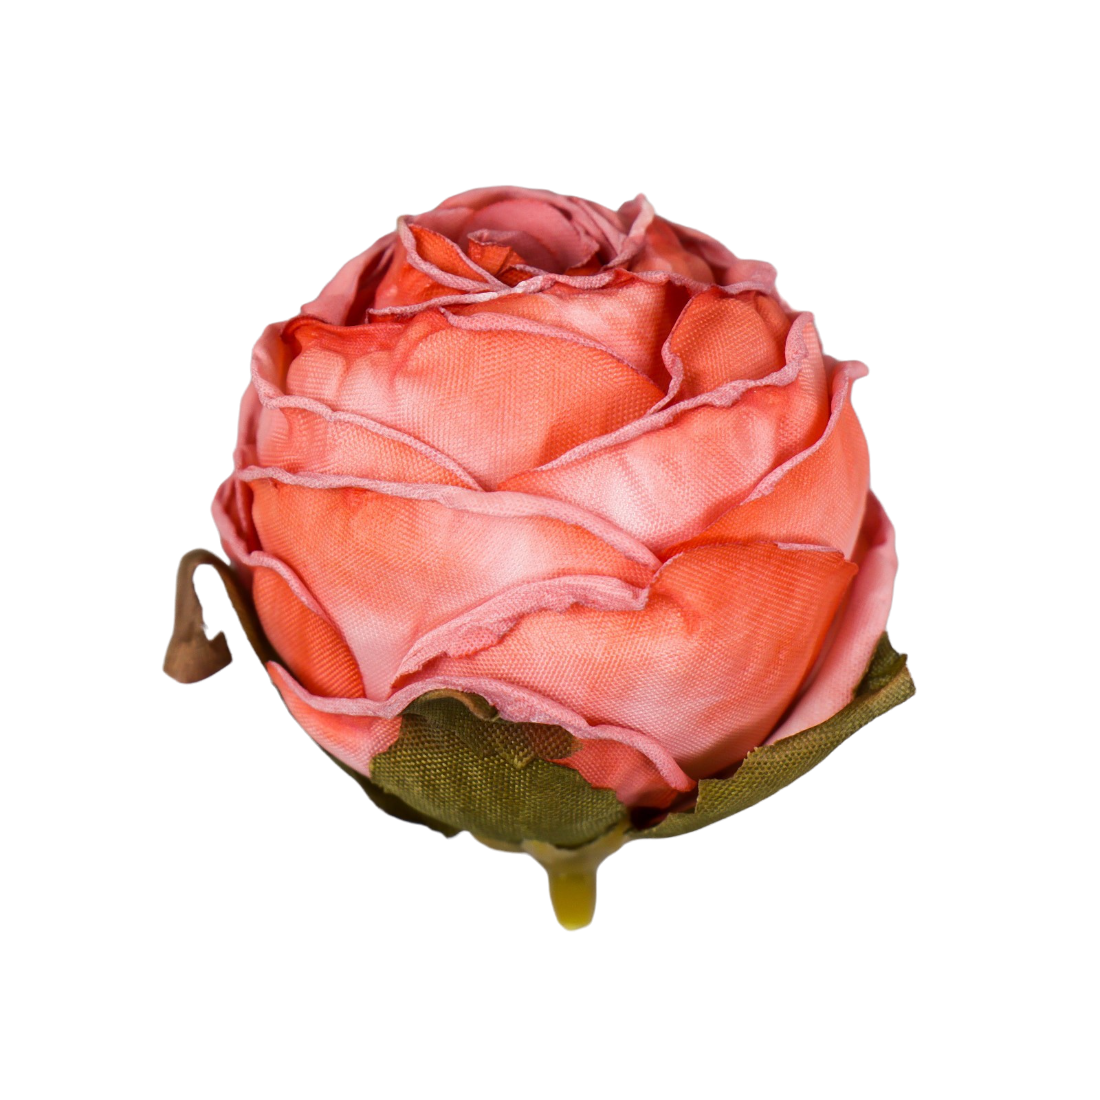 Бутон на ножке для декорирования Пионовидная роза красно-оранжевая 4х5 см